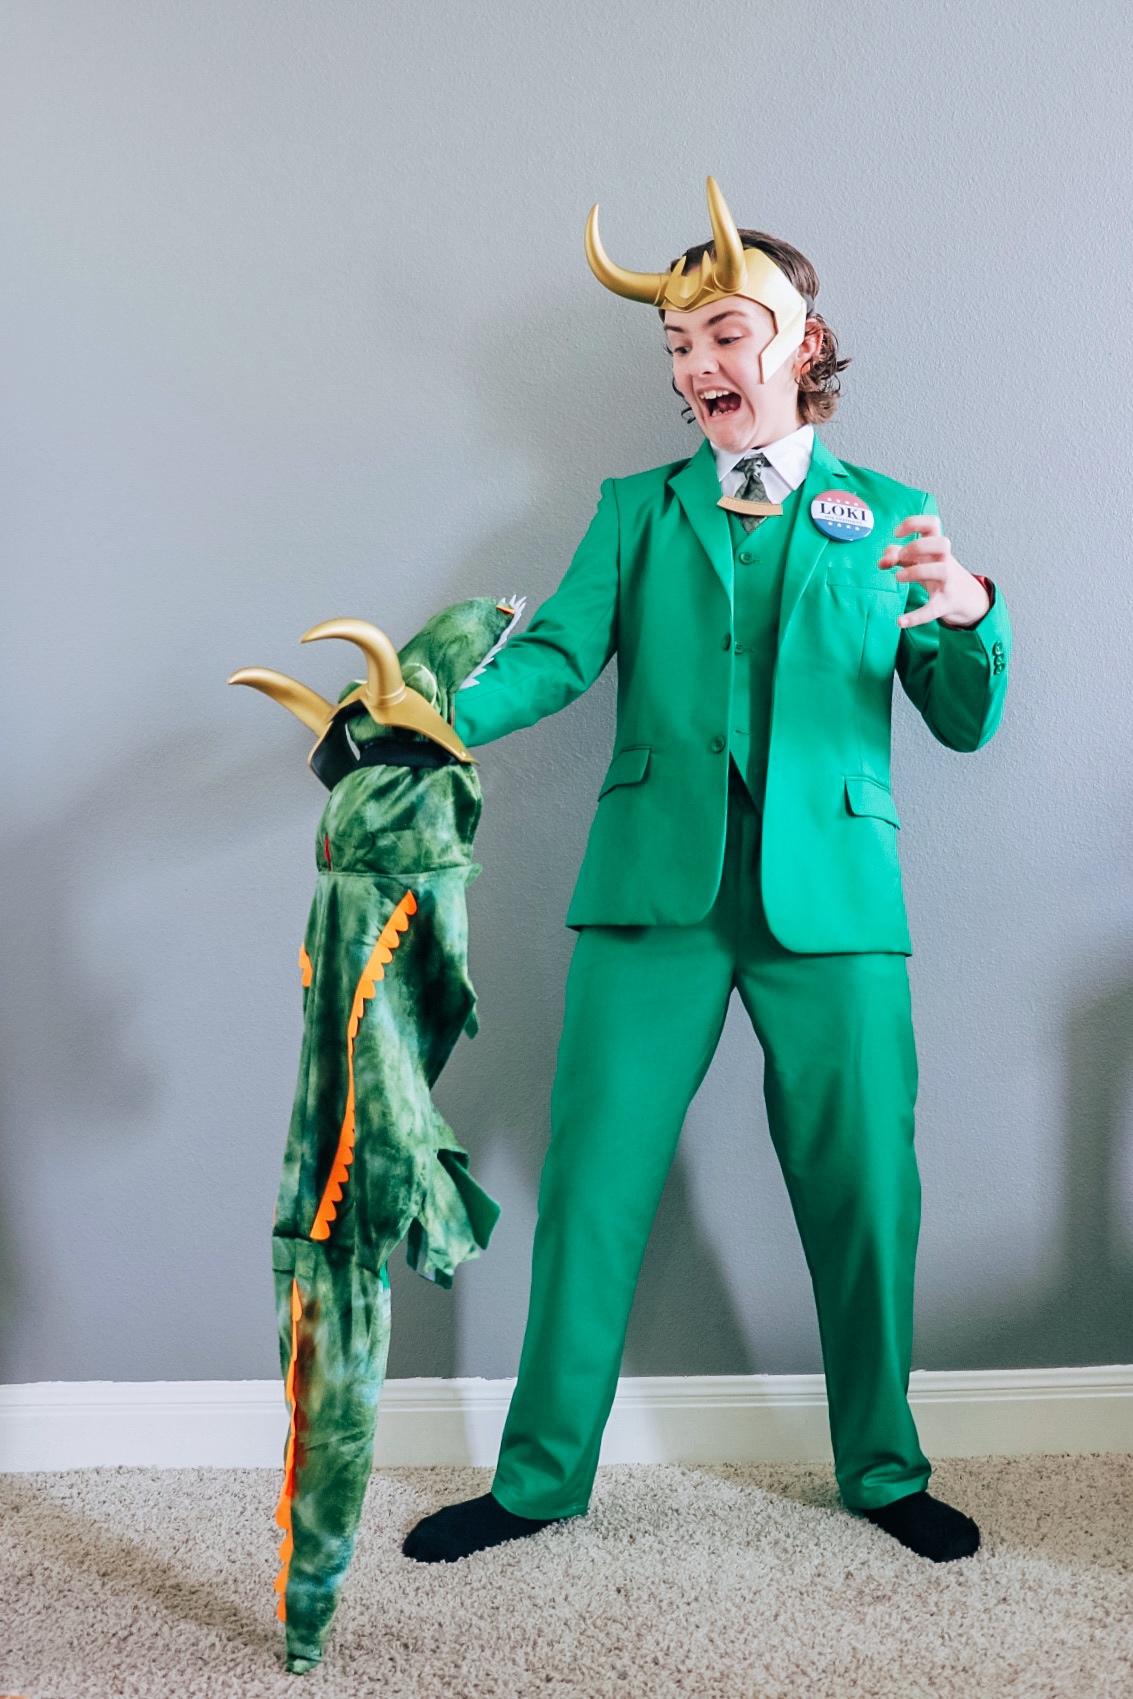 President Loki costume (Loki president outfit)